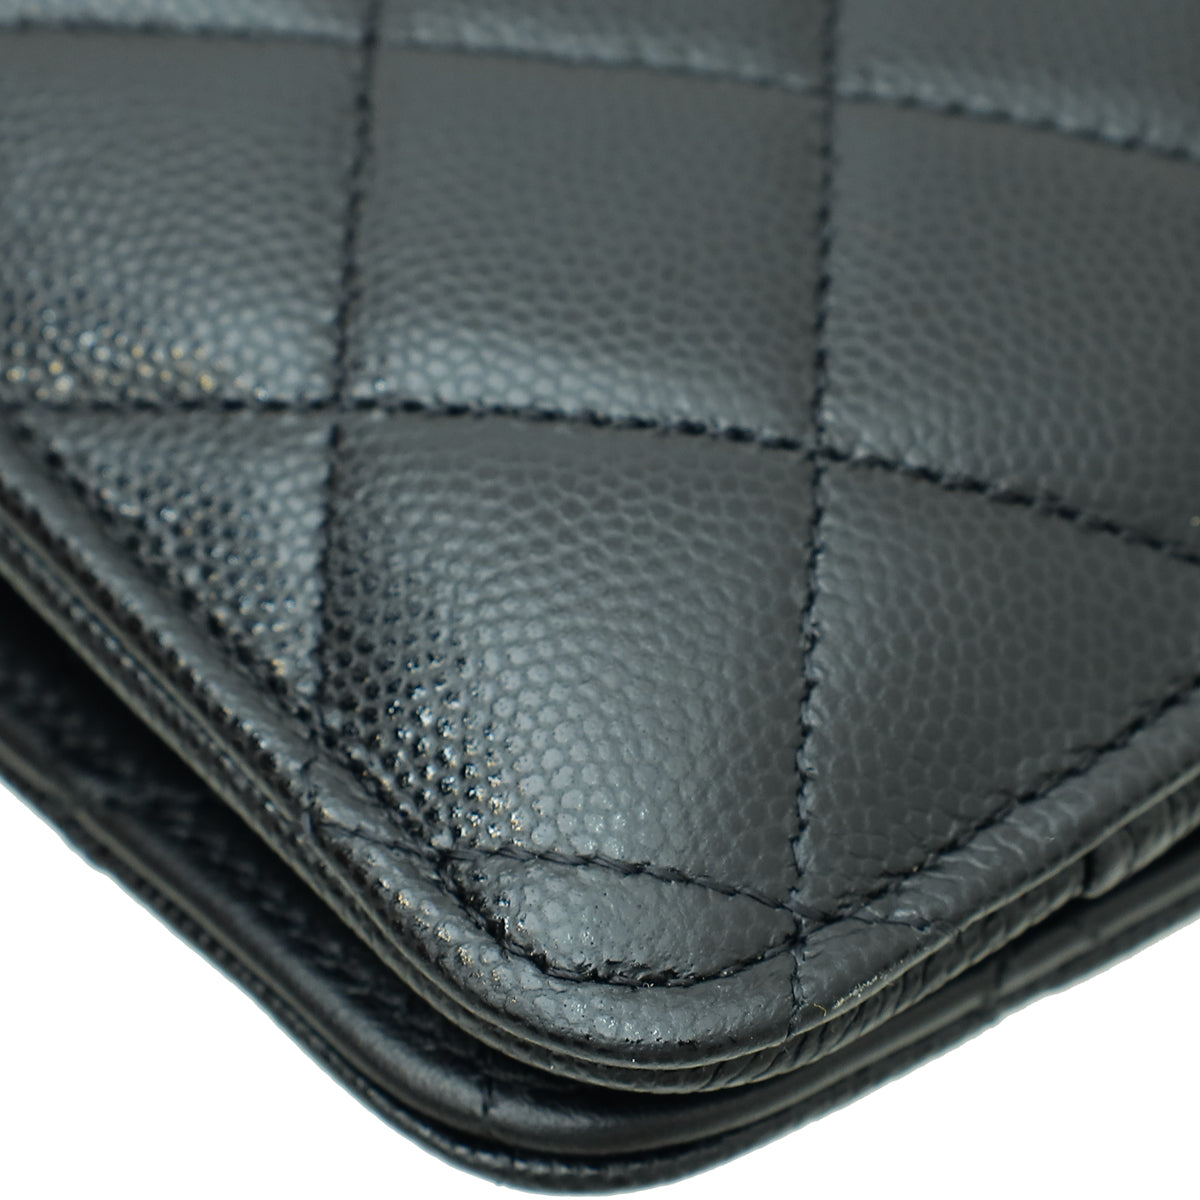 Chanel Black CC Wallet On Chain W/ Passport Holder